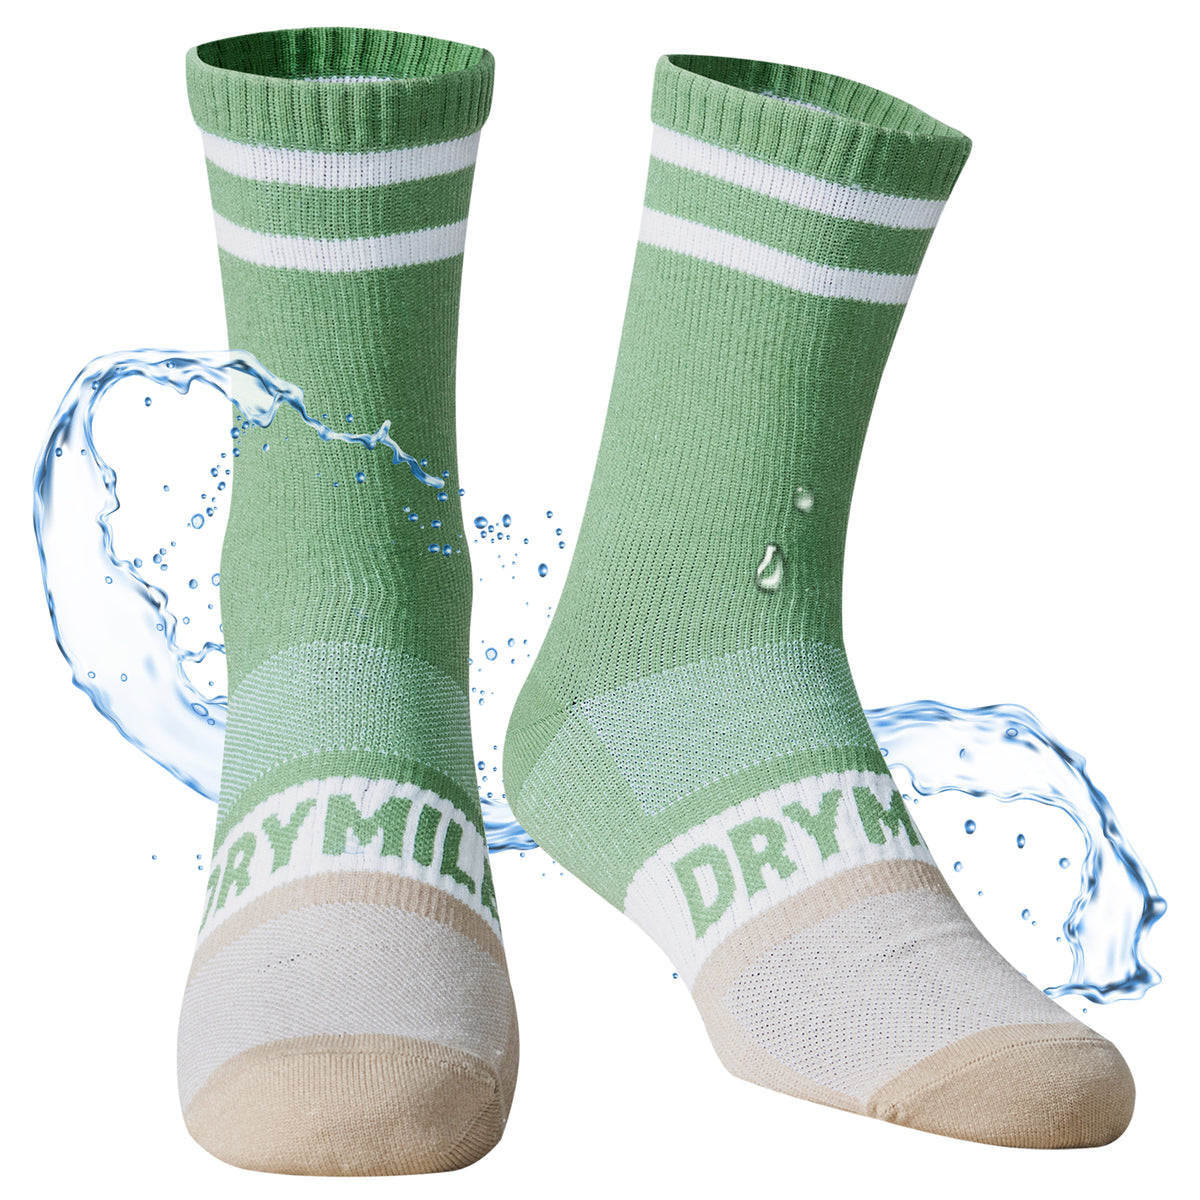 SLIM Waterproof Socks